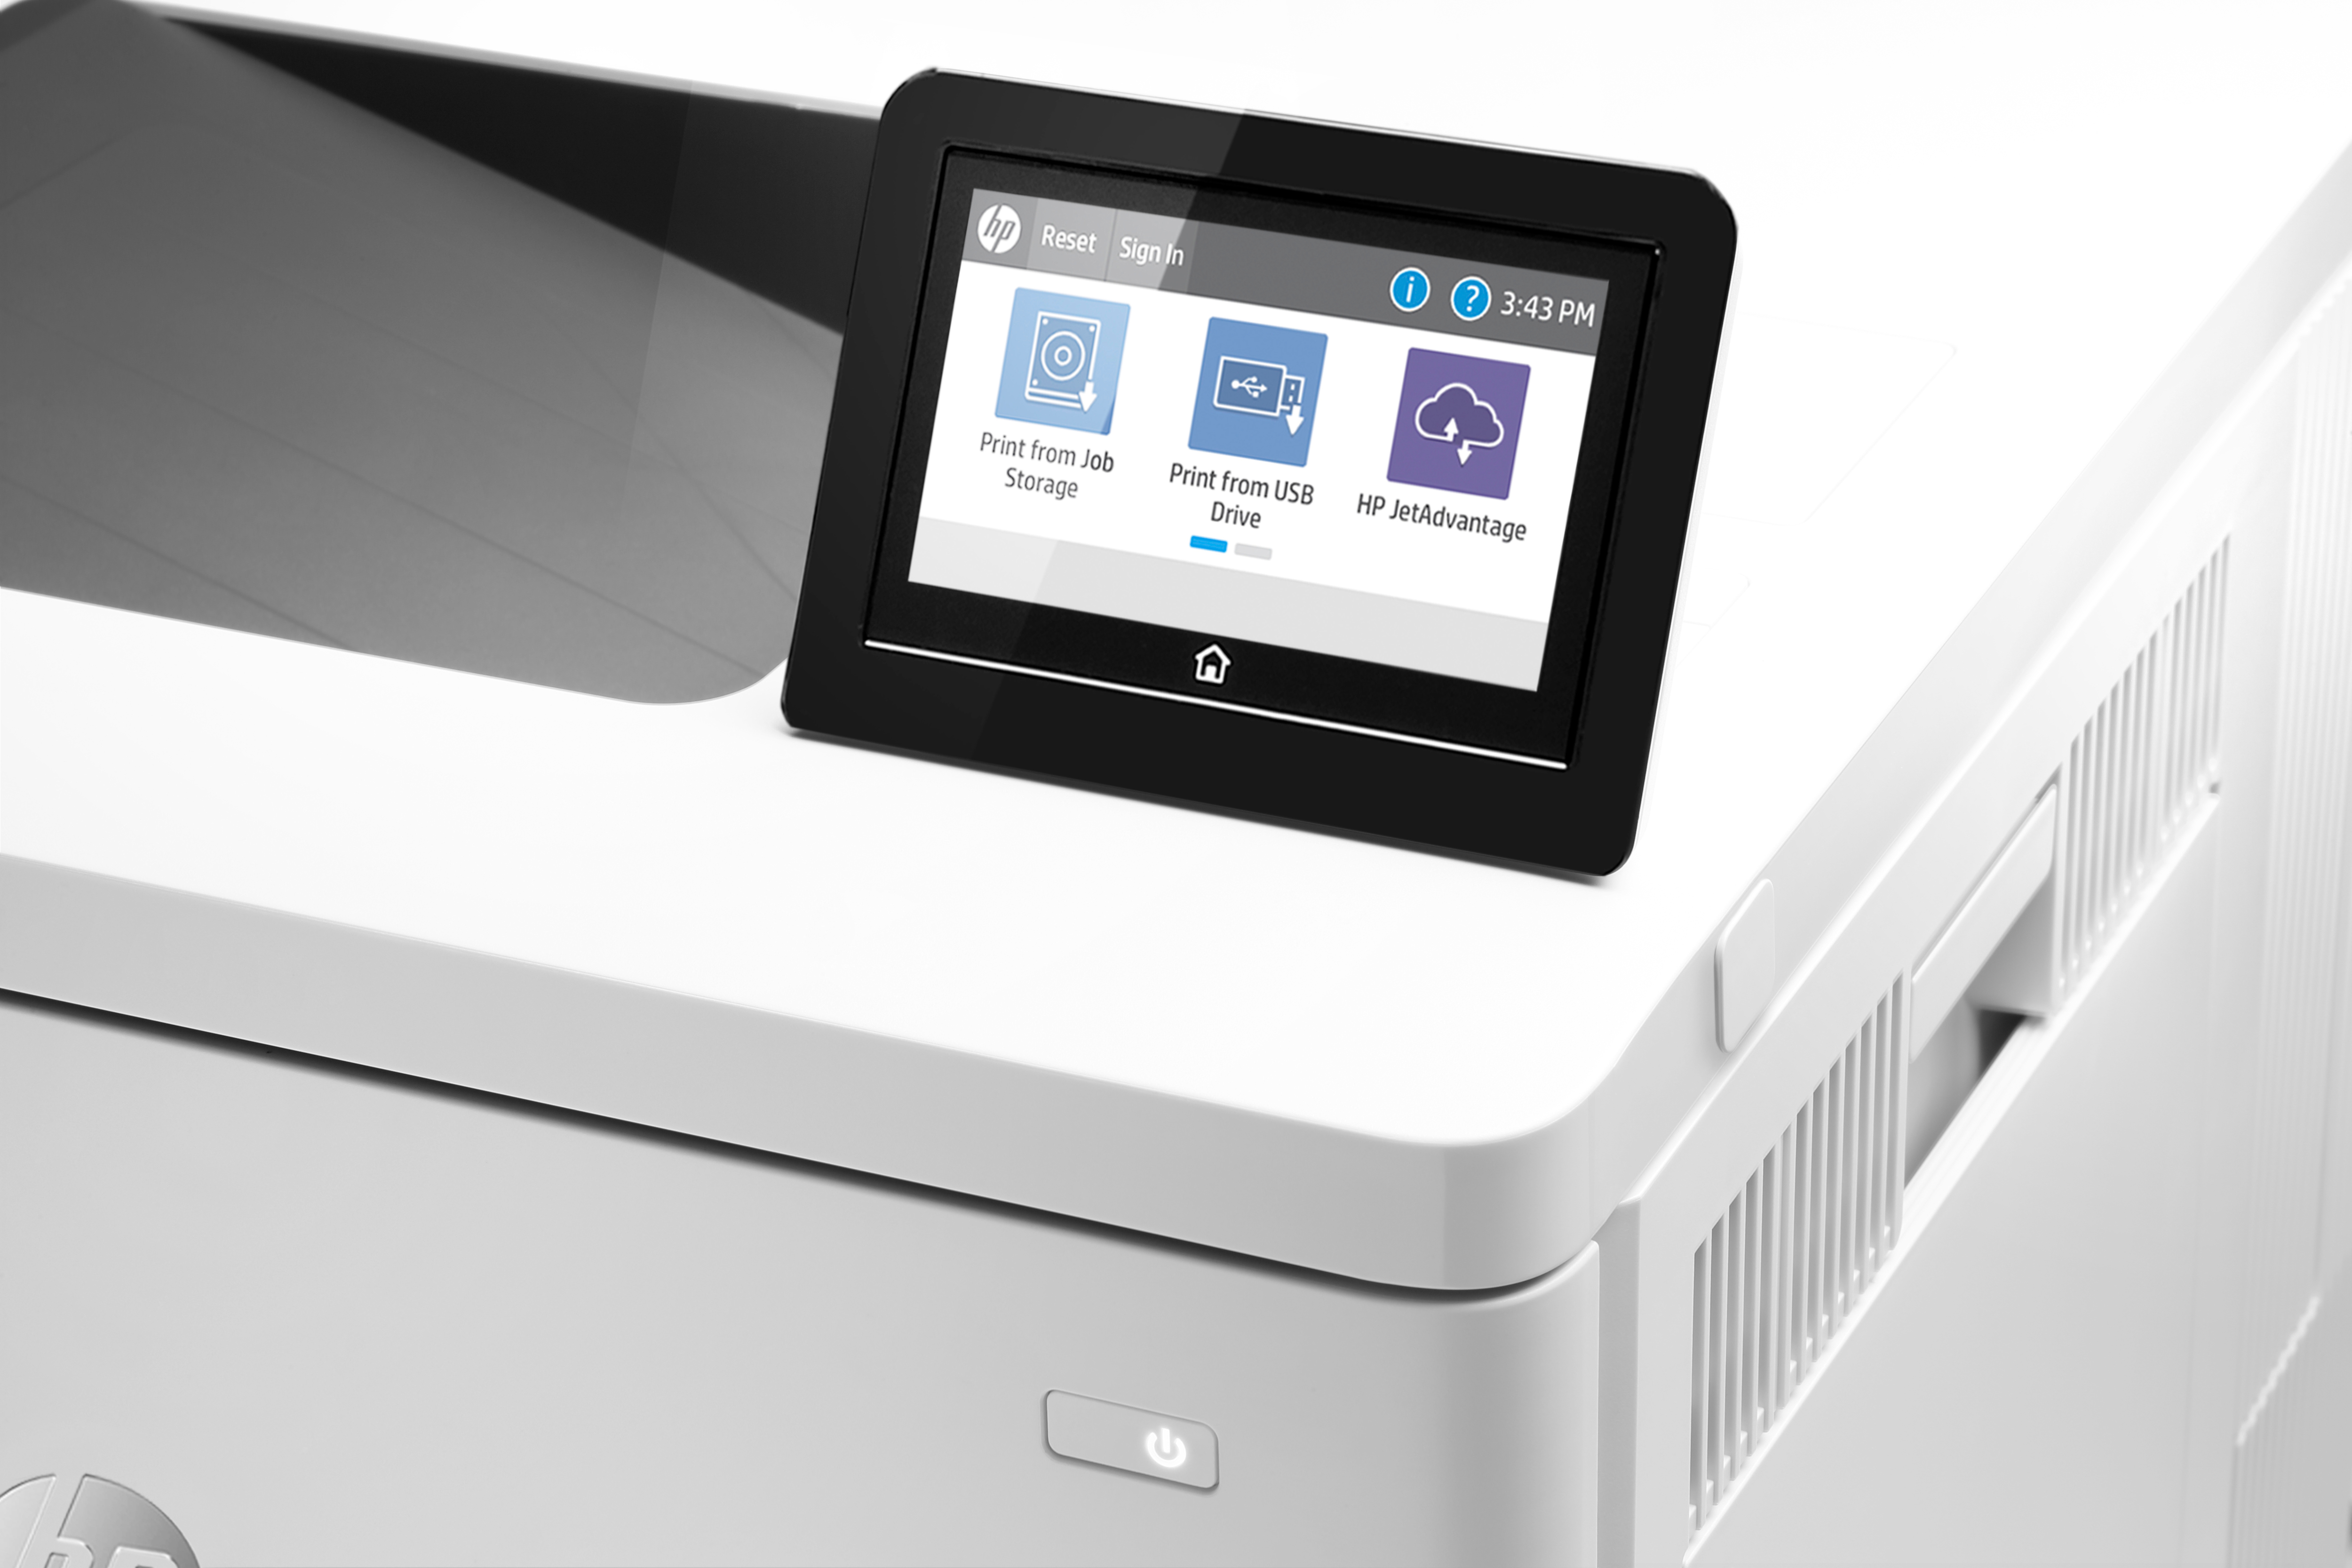 HP Color LaserJet Enterprise M555x - Drucker - Farbe - Duplex - Laser - A4/Legal - 1200 x 1200 dpi - bis zu 38 Seiten/Min. (einfarbig)/